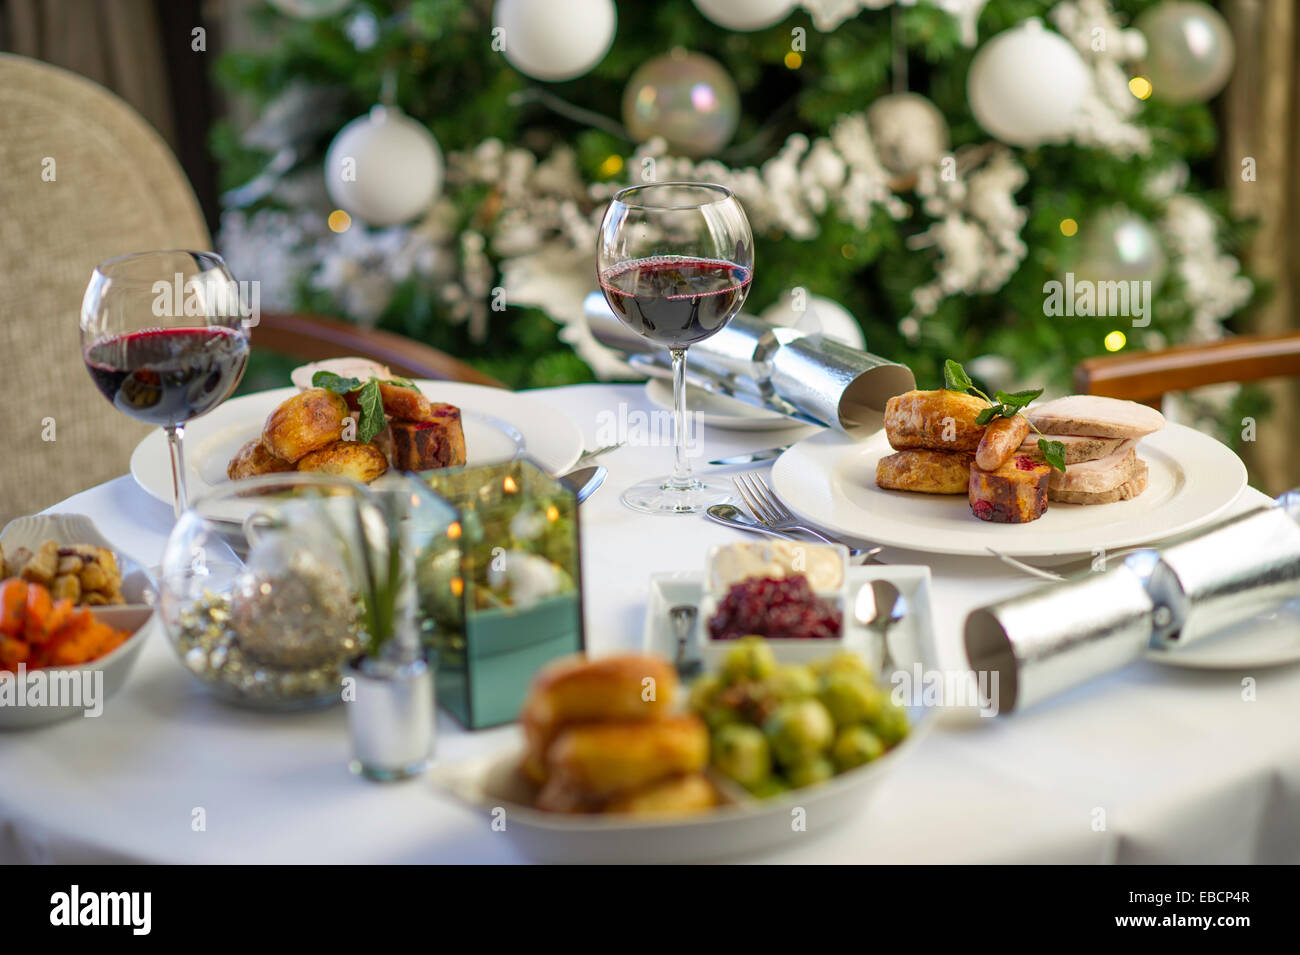 Weihnachten Braten Abendessen mit Weihnachtsbaum im Hintergrund Stockfoto